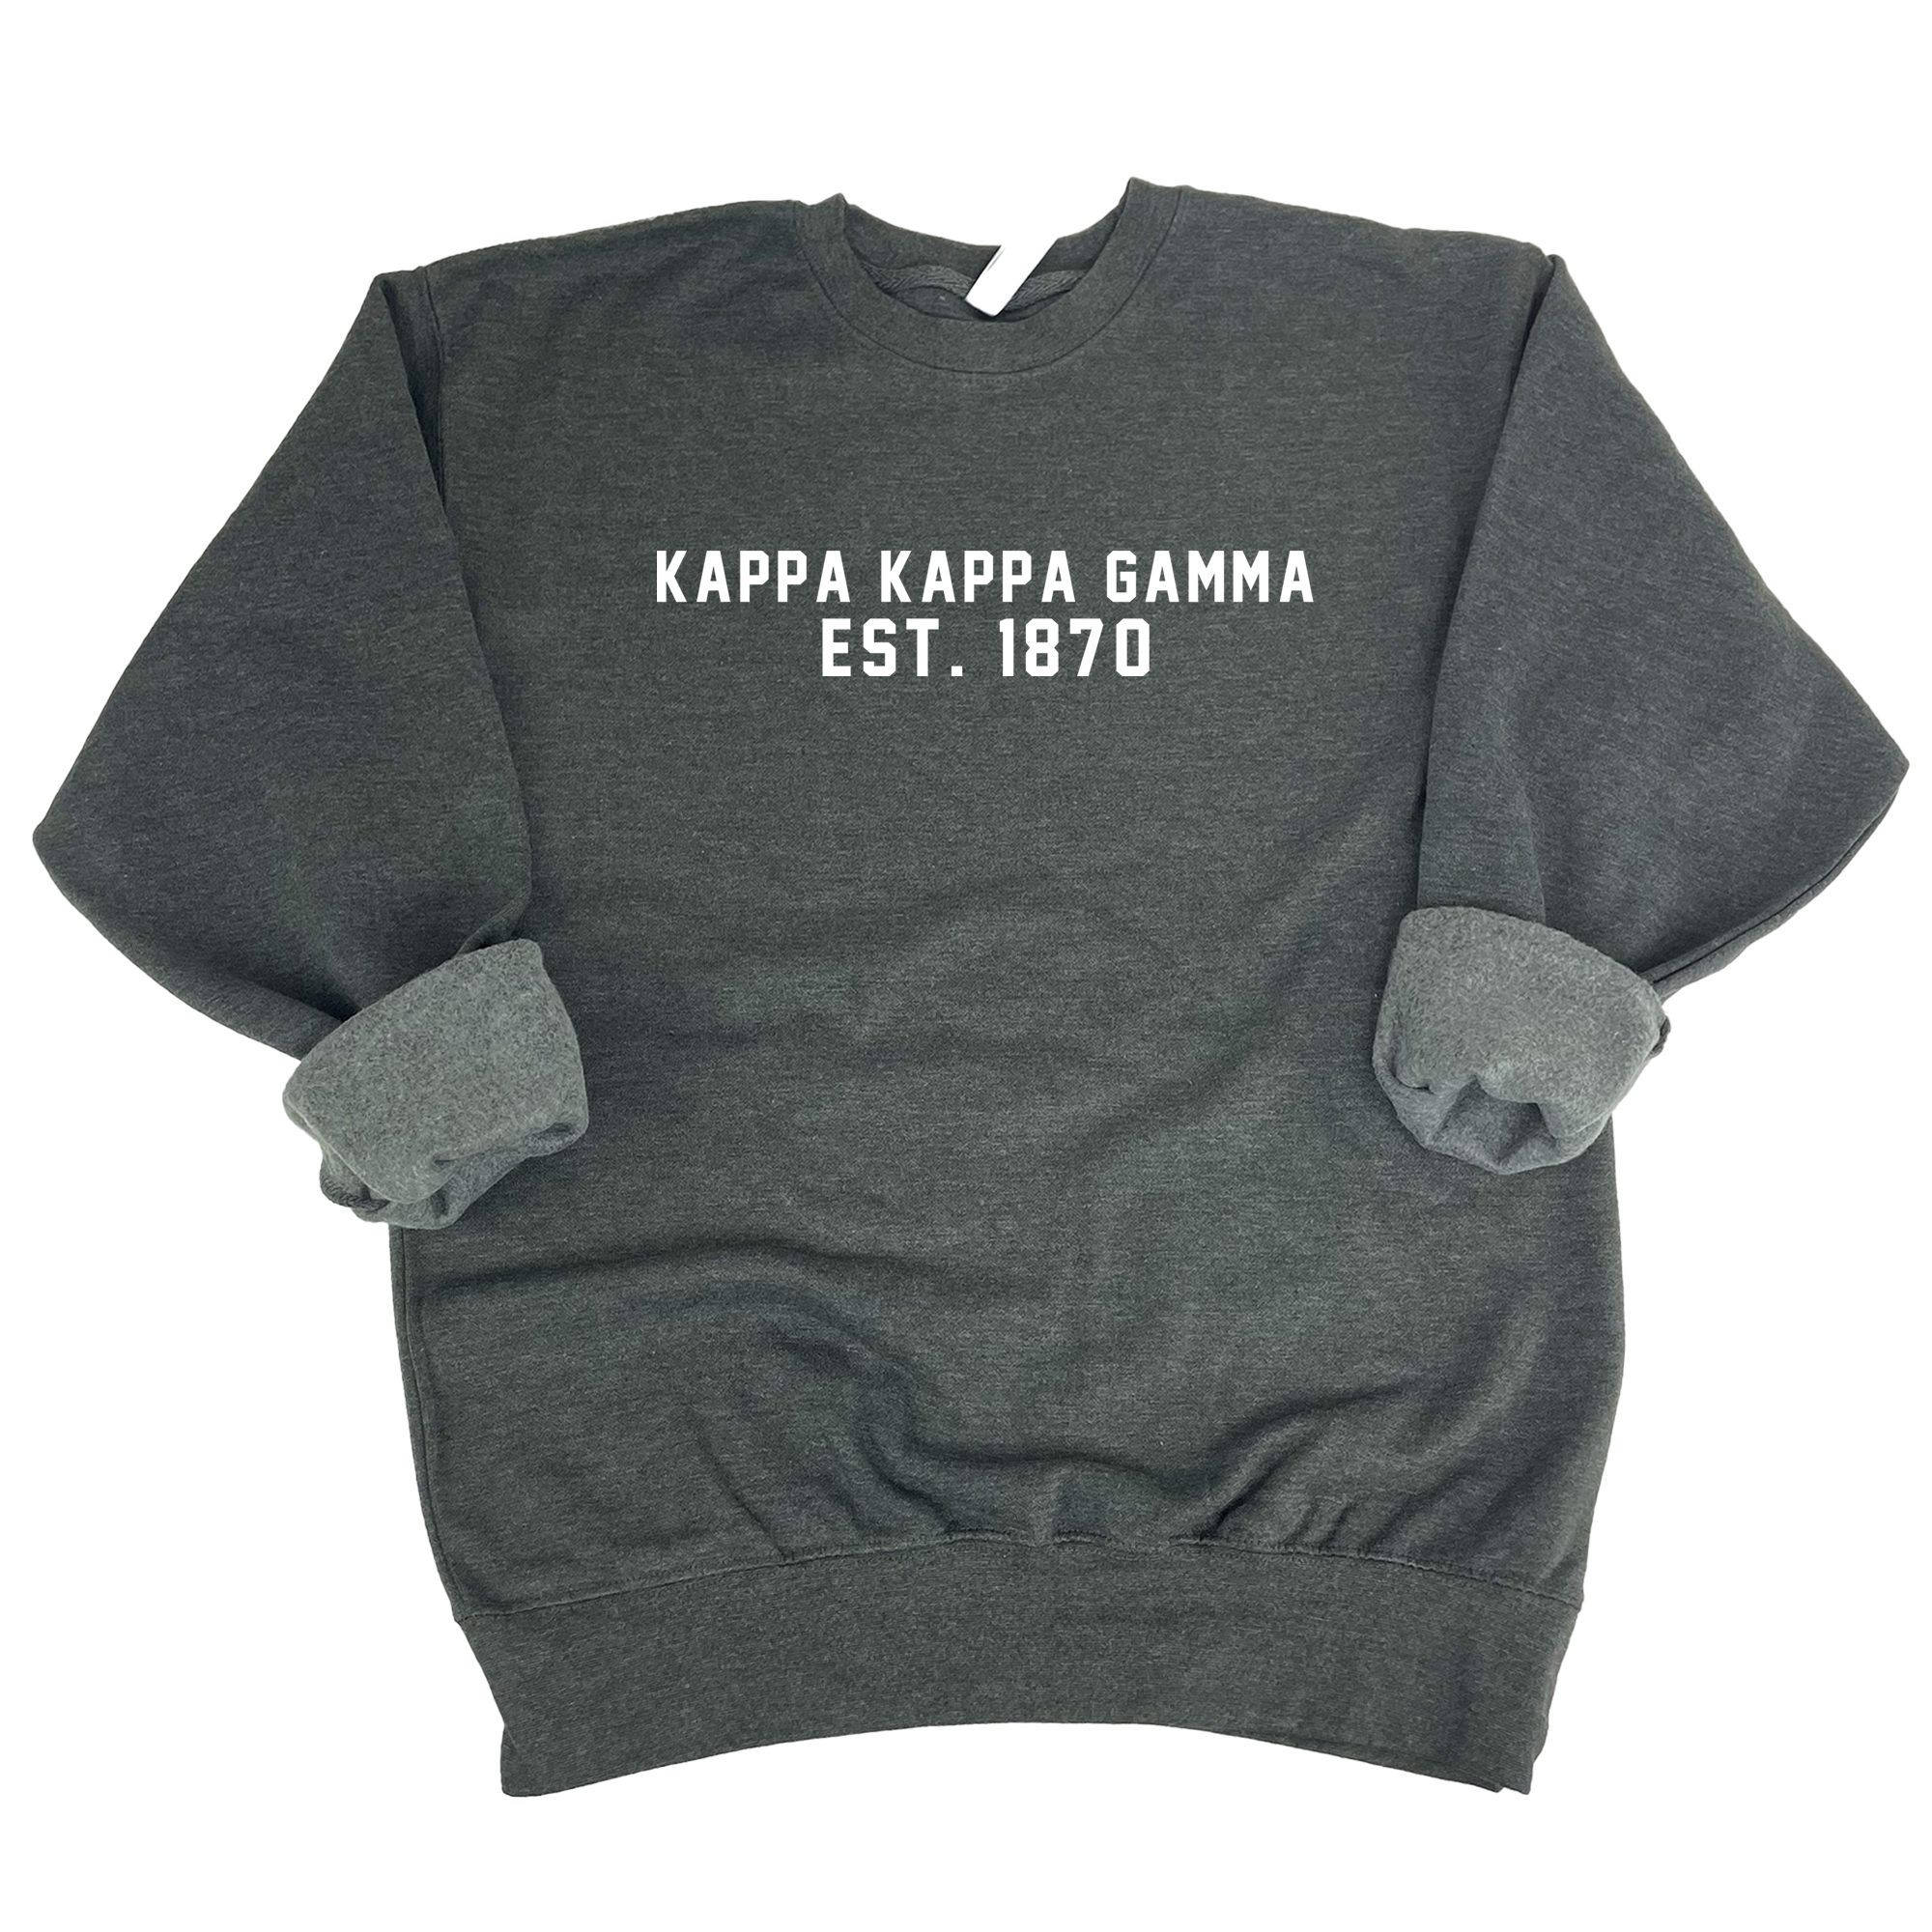 Kappa Kappa Gamma Est. 1870 Sweatshirt